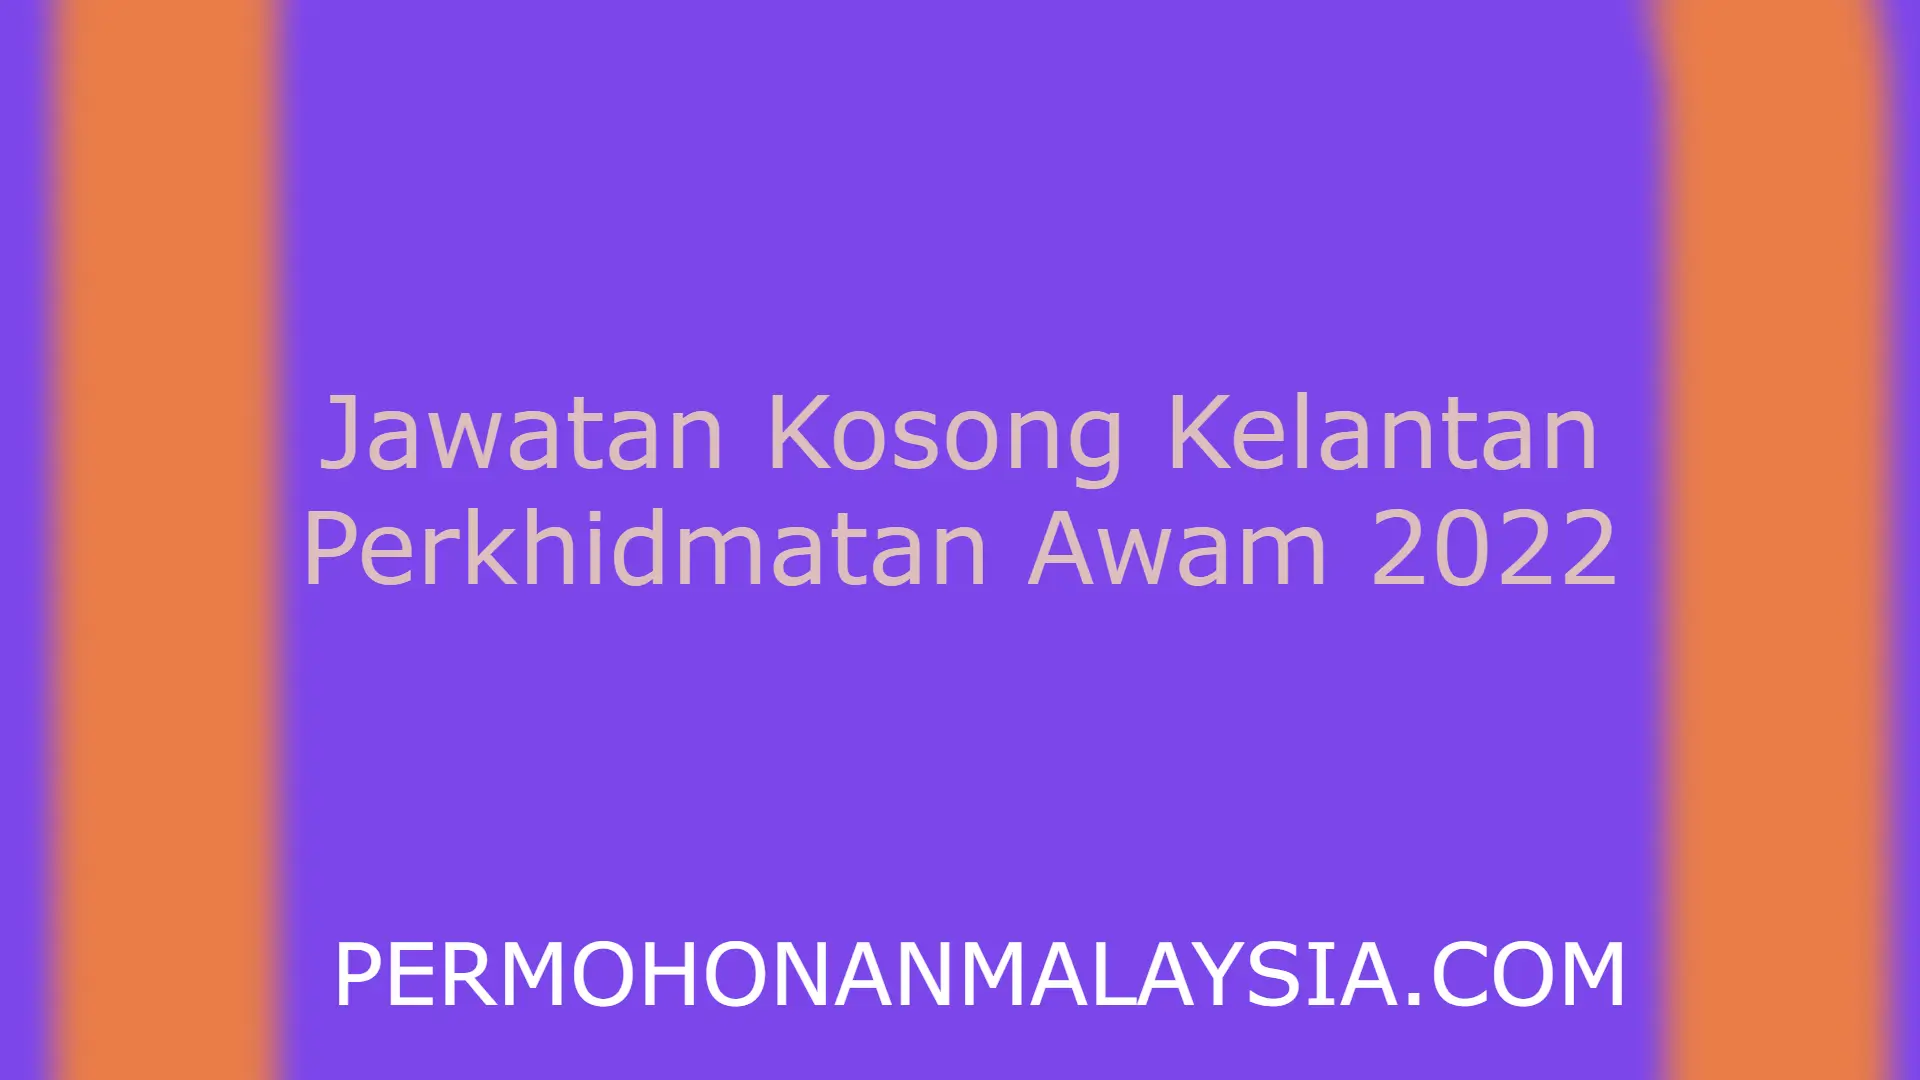 Jawatan Kosong Kelantan Perkhidmatan Awam 2022